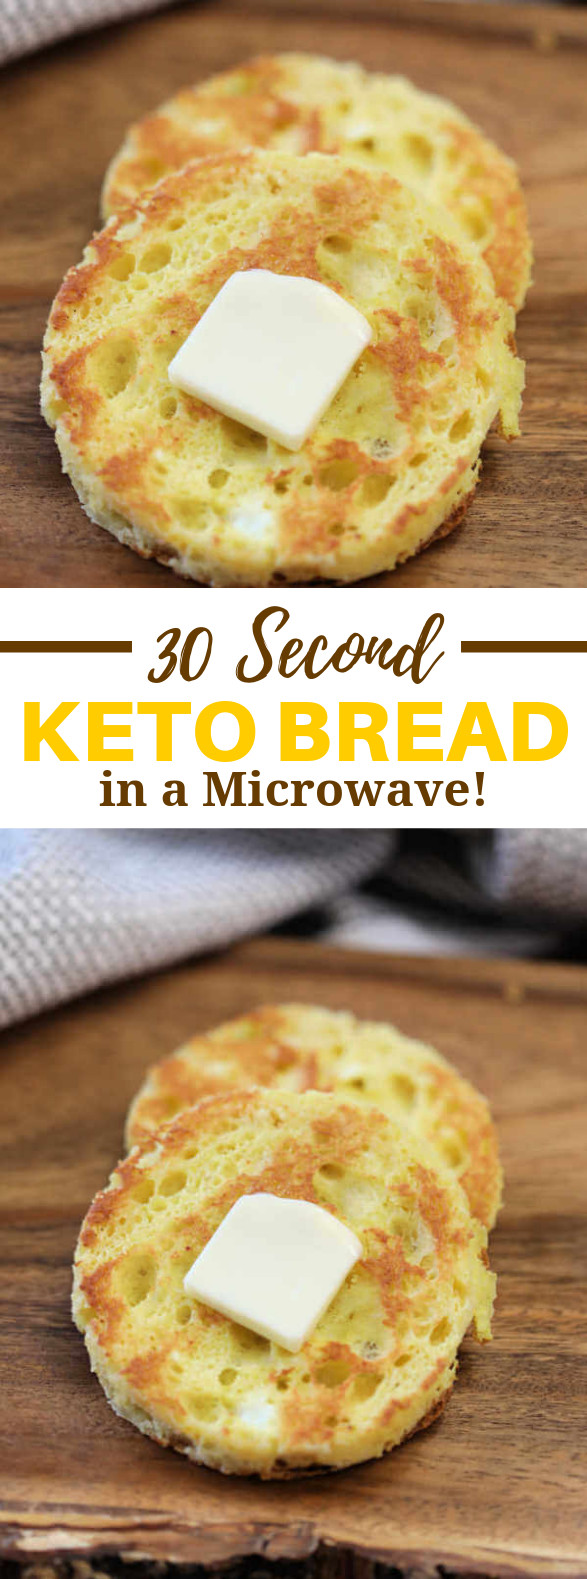 90 Second Keto Bread No Egg
 THE BEST 90 SECOND BREAD RECIPE keto lunch